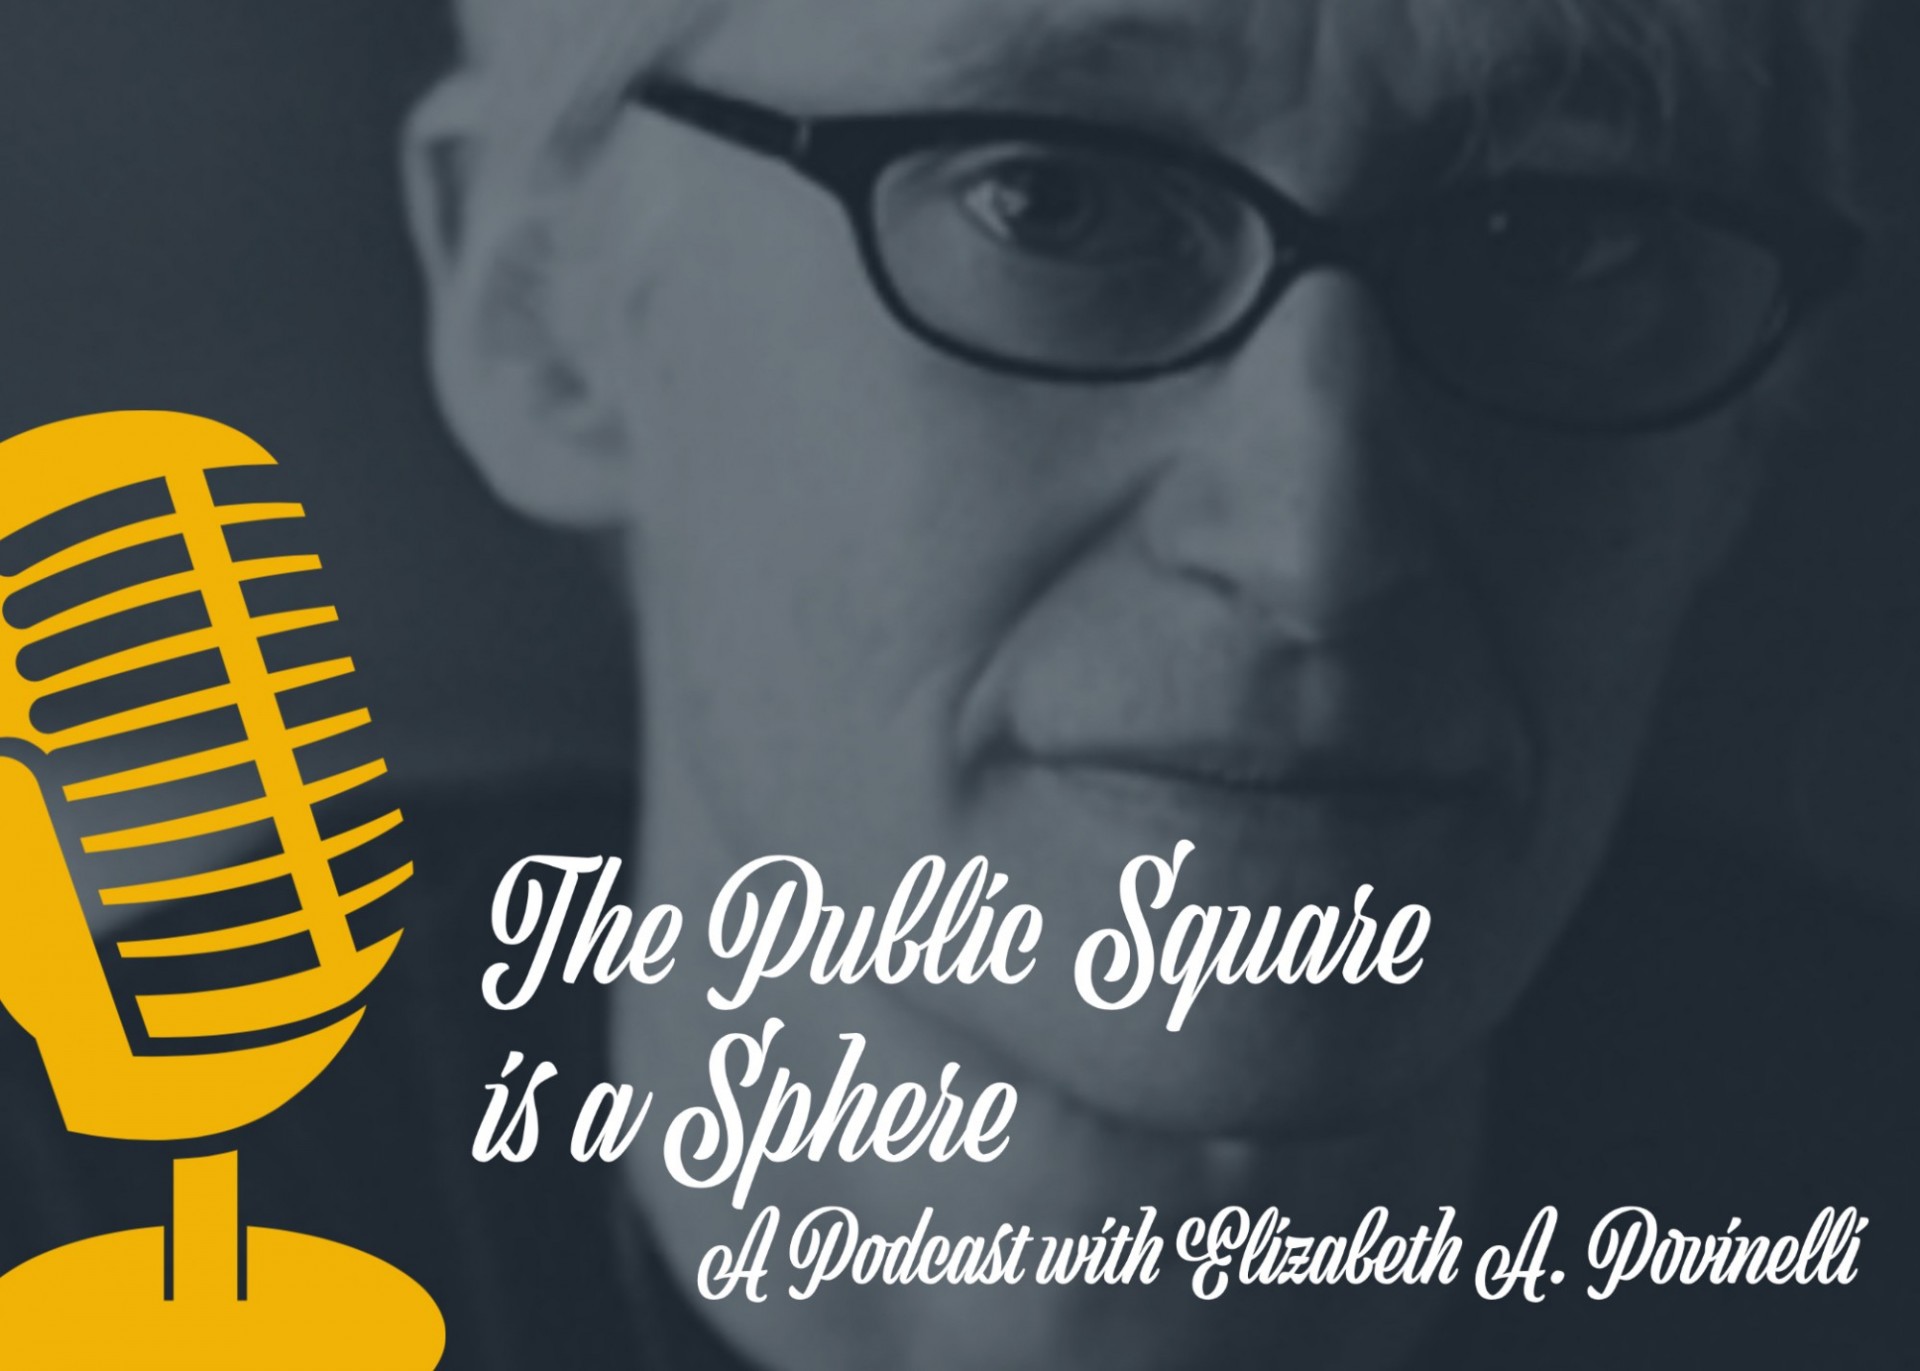 Povinelli podcast icon: 'The Public Square is a Sphere'